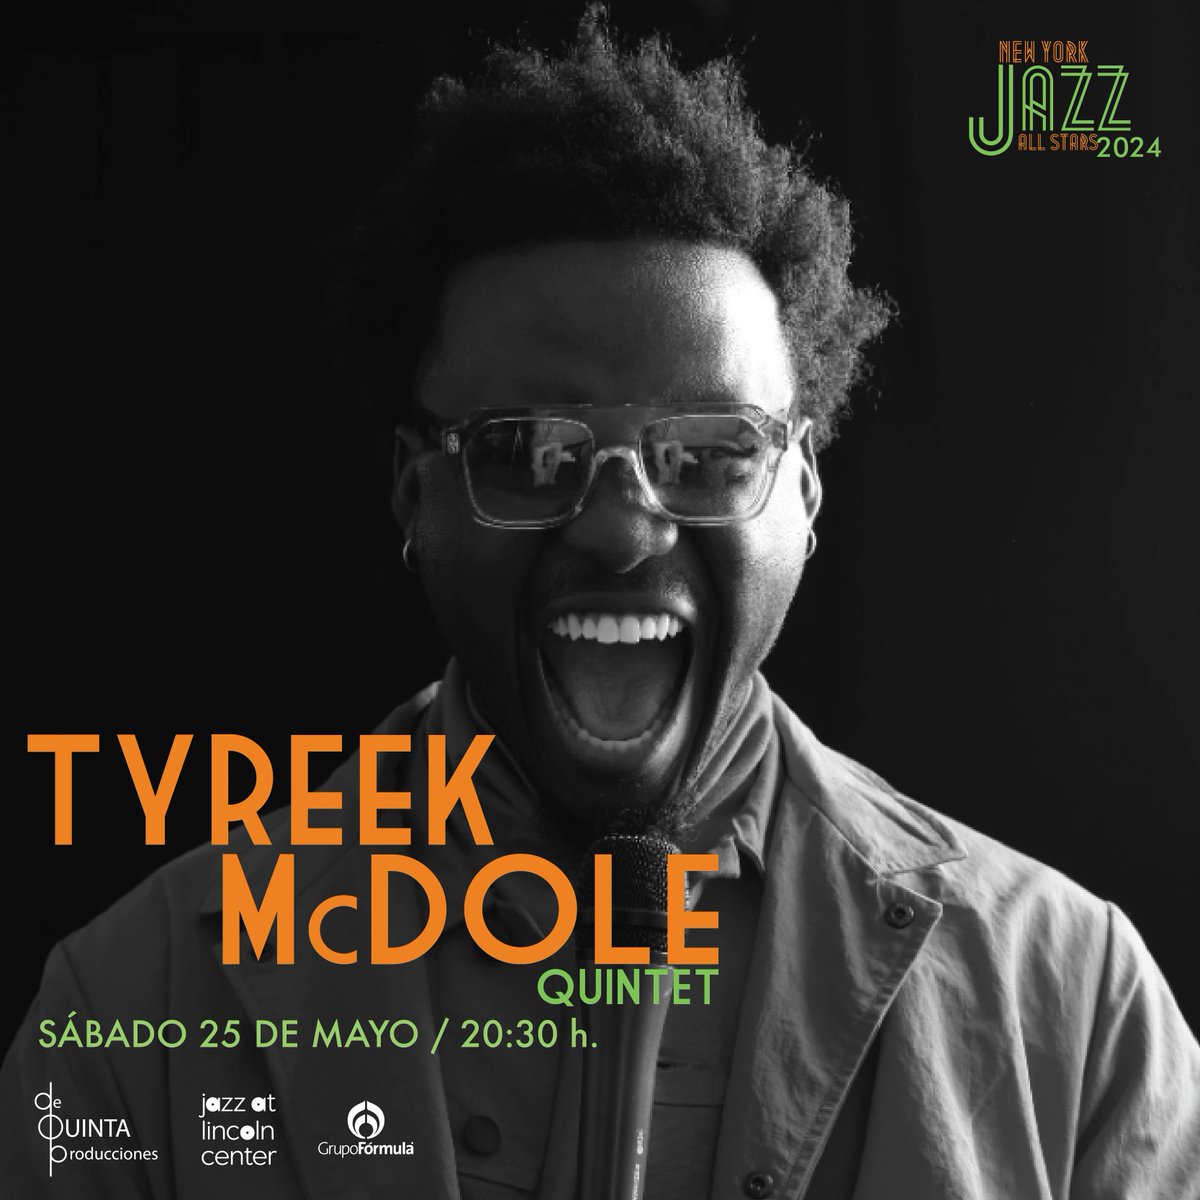 🫵 ¡Sigue la temporada de NY Jazz All Stars by @DeQuintaPro! ⭐️ Vocalista de 23 años, Tyreek McDole ha llamado la atención del público por su notable talento, caracterizado por su timbre aterciopelado e interpretación impecable. 🎟 En la app de Fever y bit.ly/NYJazzAllStars